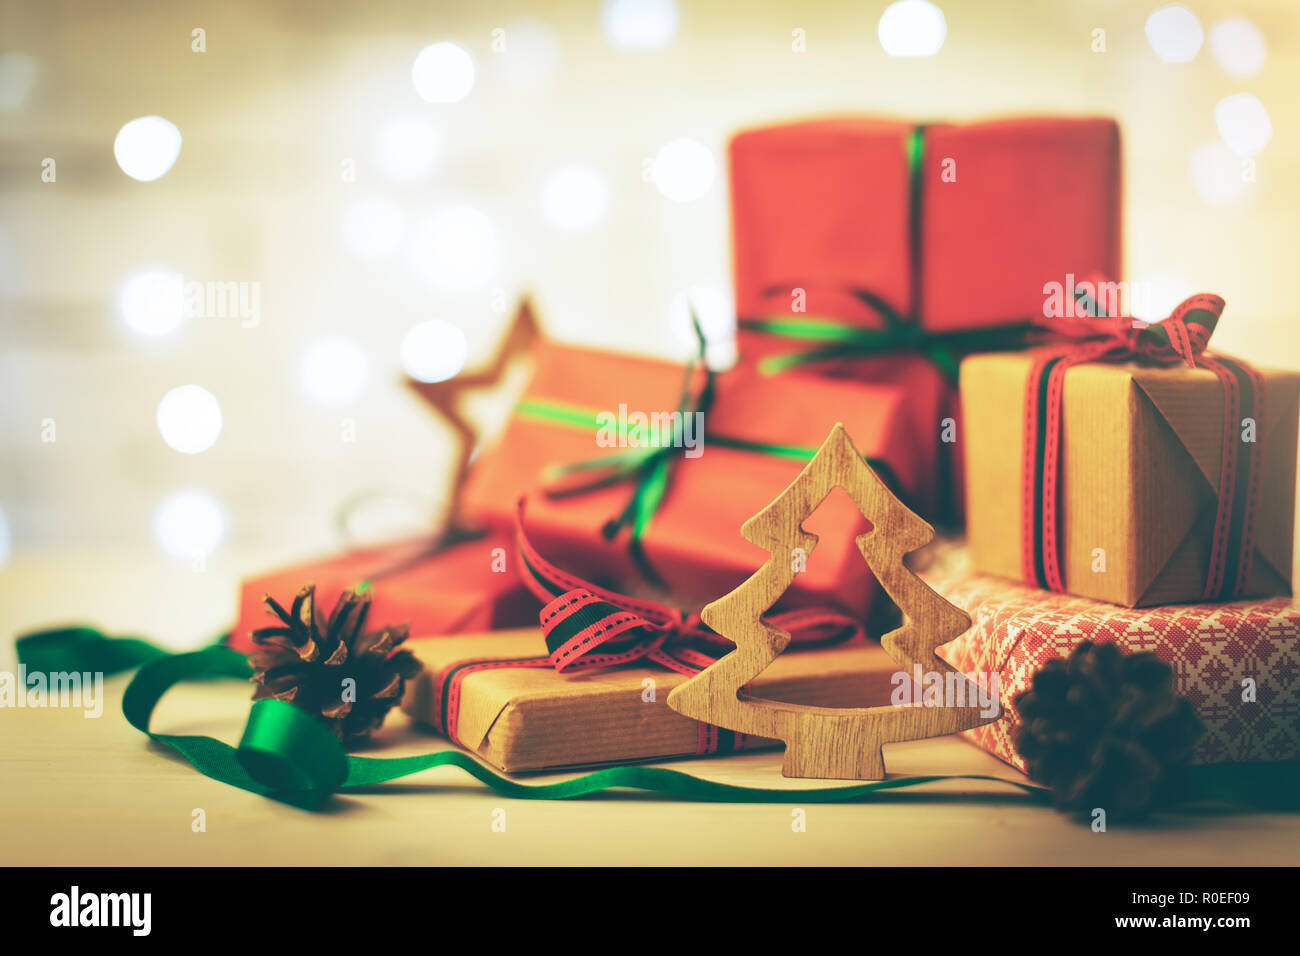 Weihnachten Grusskarten - Stapel Geschenke und Dekorationen Stockfoto